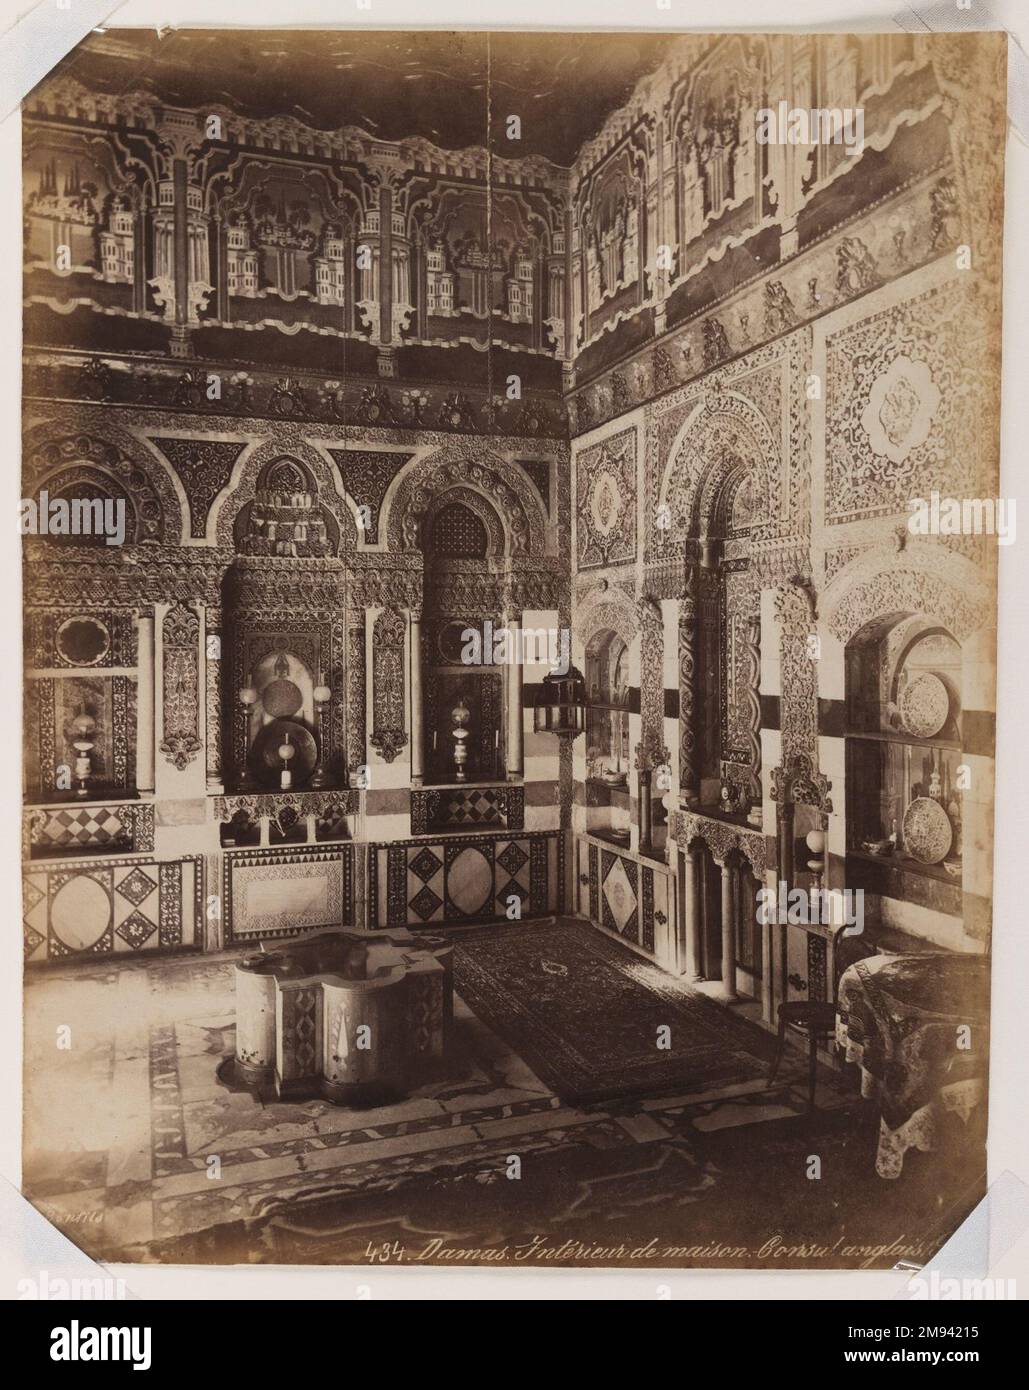 Damaskus- Interieur des Britischen Konsulats Felix Bonfils (Französisch, 1831-1885). Damaskus - Interior des britischen Konsulats, nach 1867. Fotografie in Albumsilber, 14 x 10in. (35,6 x 25,4cm). Kunst der islamischen Welt nach 1867 Stockfoto